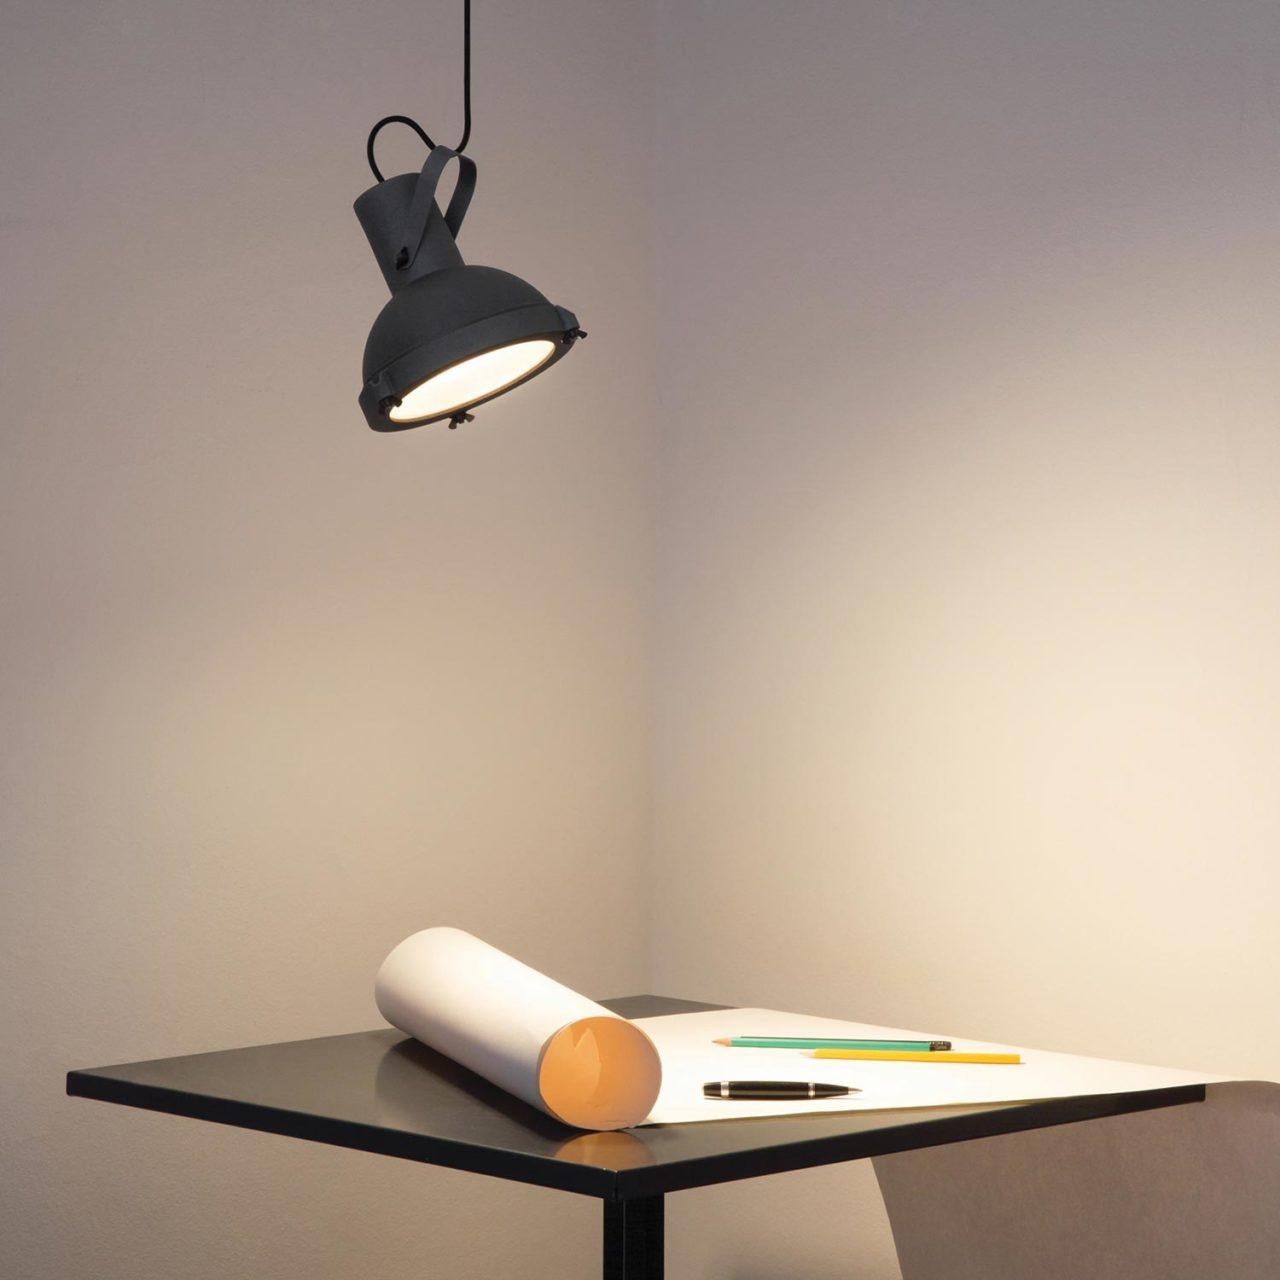 Lampe à suspension 'Projecteur 165' de Le Corbusier pour Nemo en Moka.

Inspiré par le design du Projecteur 365 de Le Corbusier 1950, le 